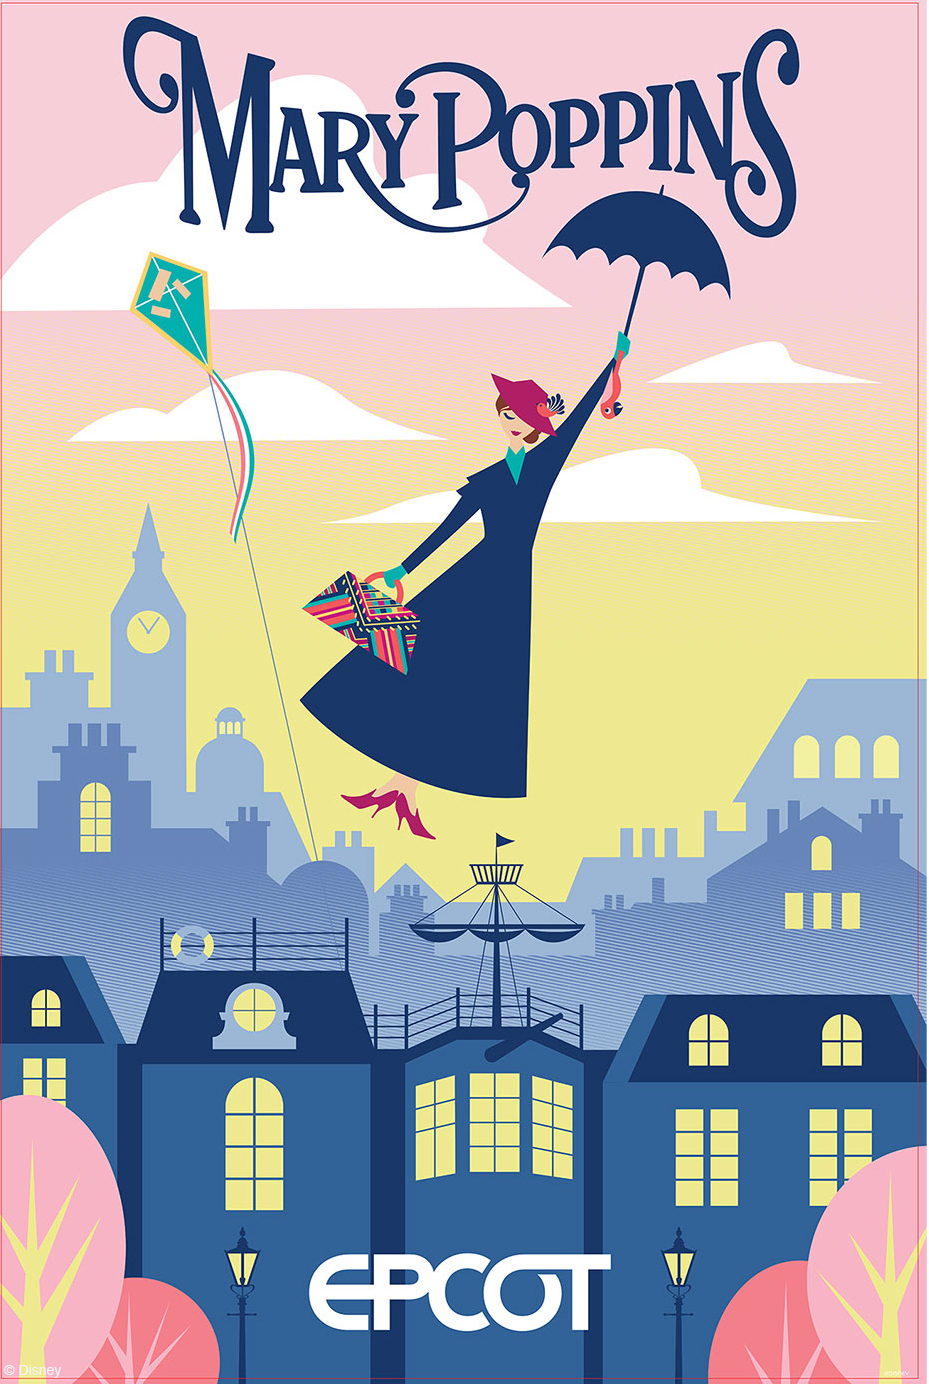 UK Pavilion: Mary Poppins